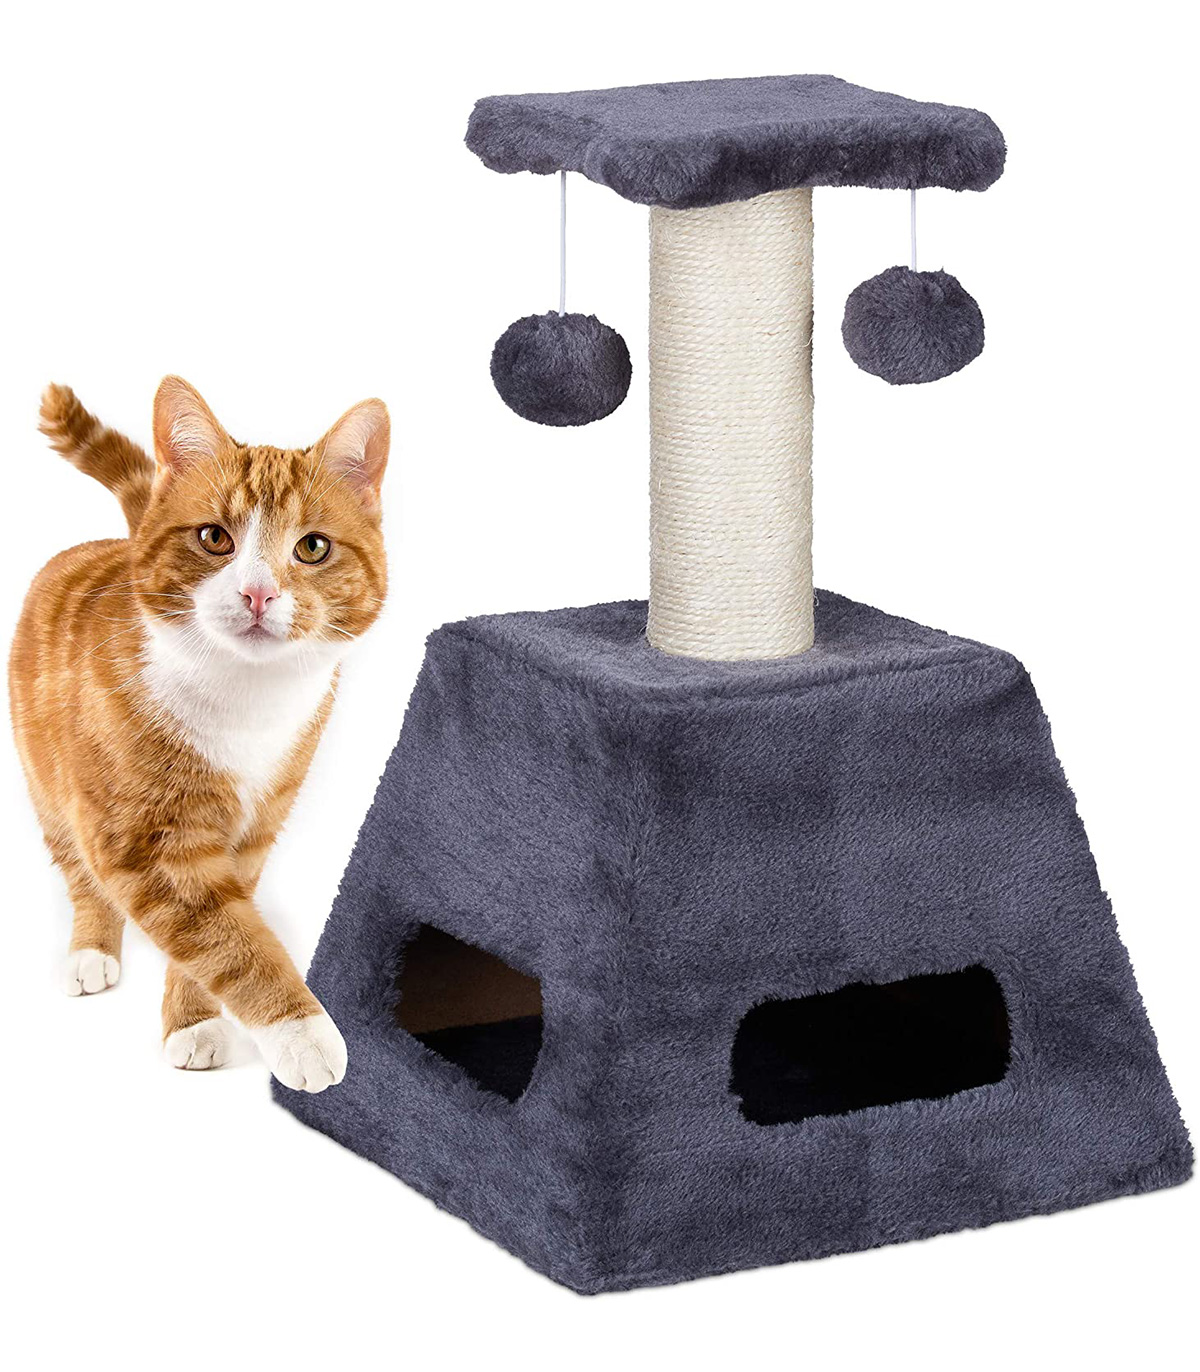 Stalp de zgariat pentru pisici cu trunchi de sisal si jucarii, Turn mic, Gri, 27 x 27 x 42 cm Ansambluri